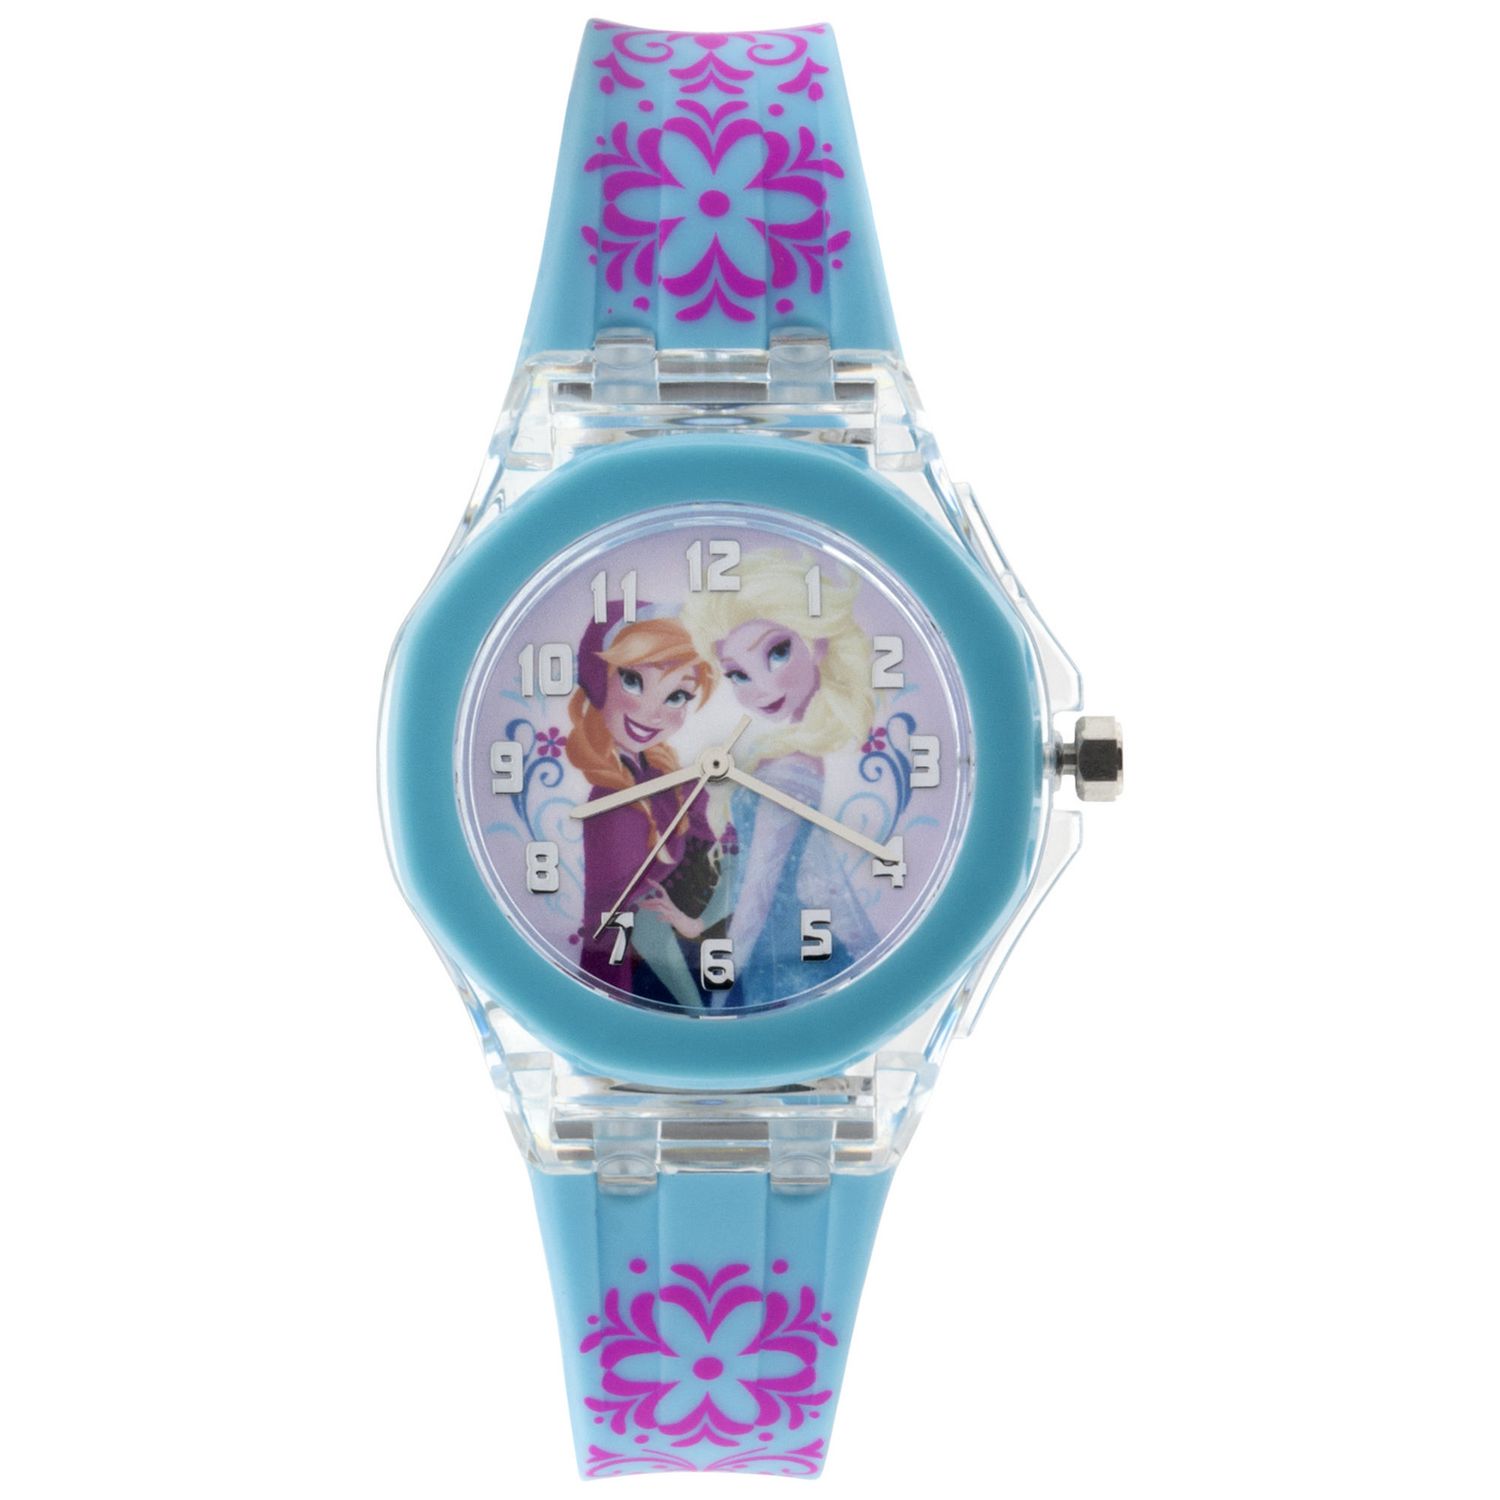 Frozen watch lego 7139